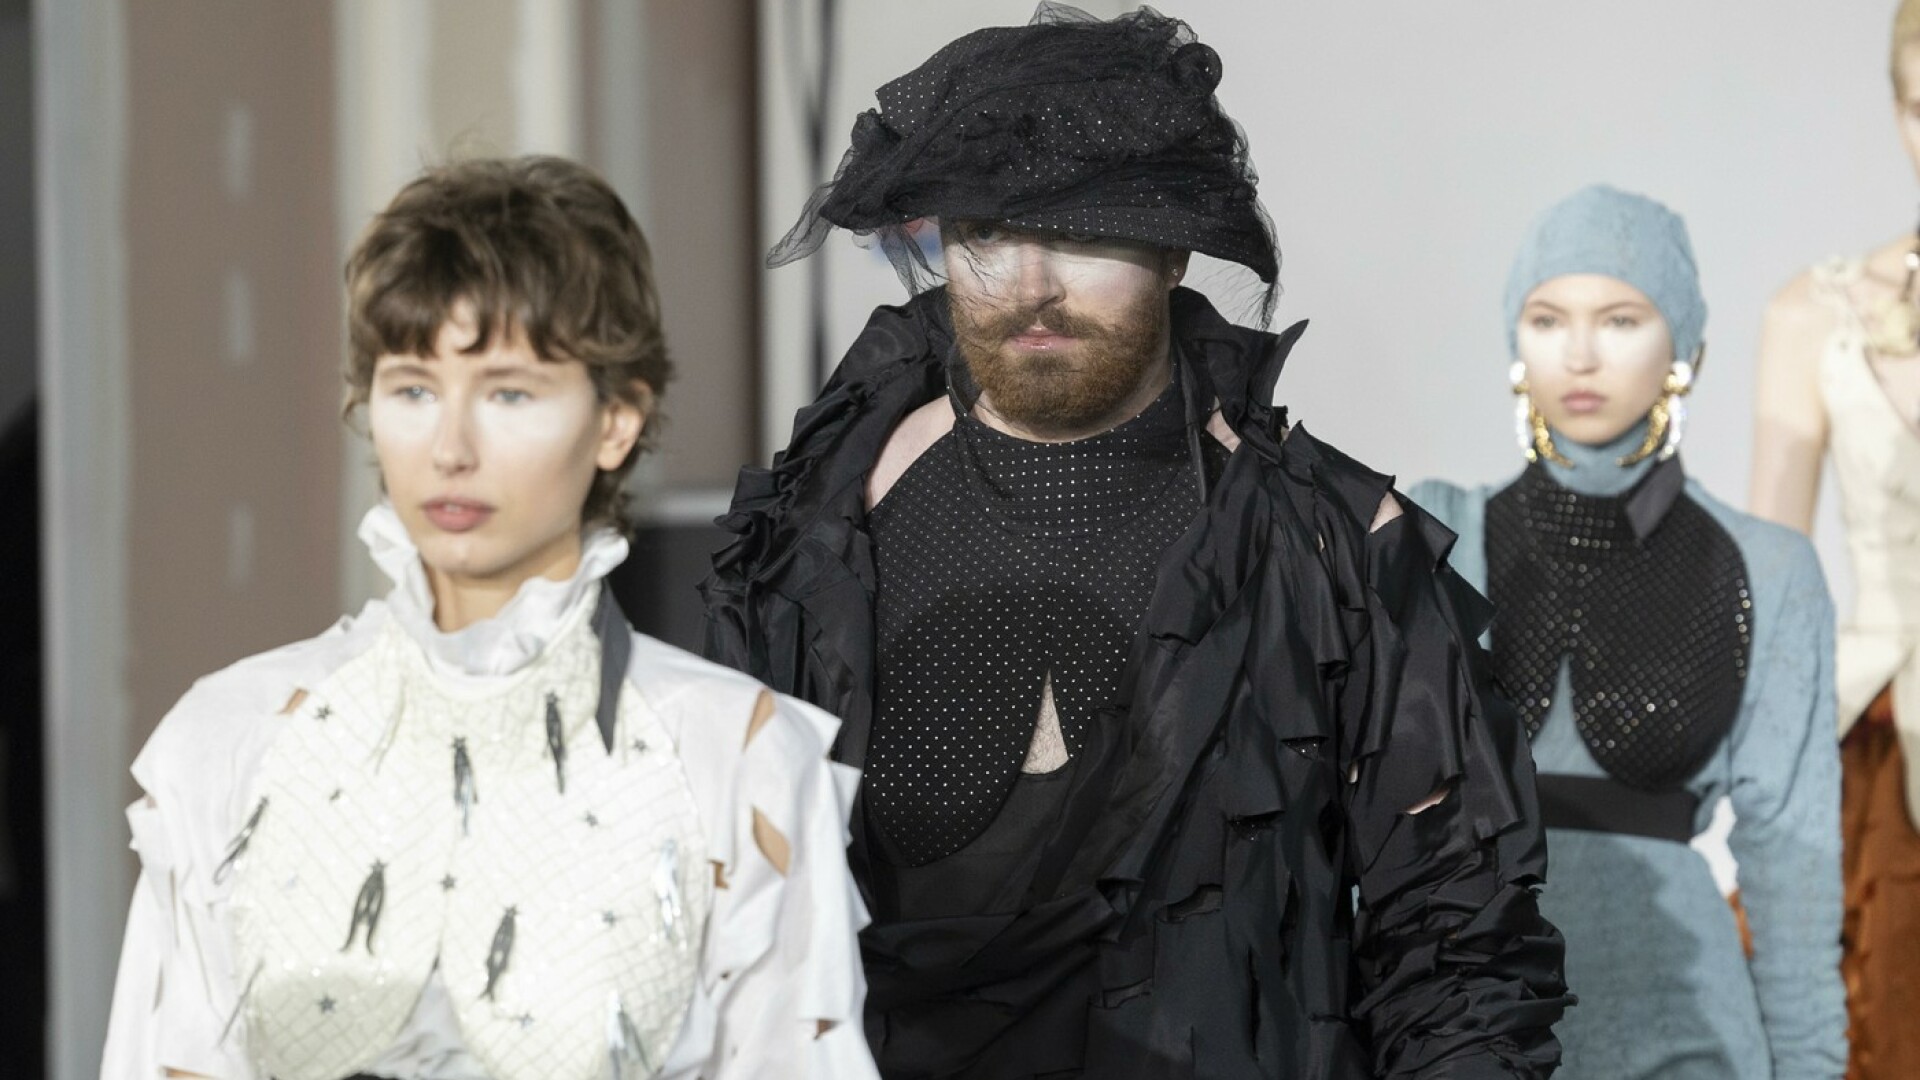 Sam Smith, apariție șocantă la Paris Fashion Week. Artistul a defilat într-o ținută creată de Vivienne Westwood | FOTO